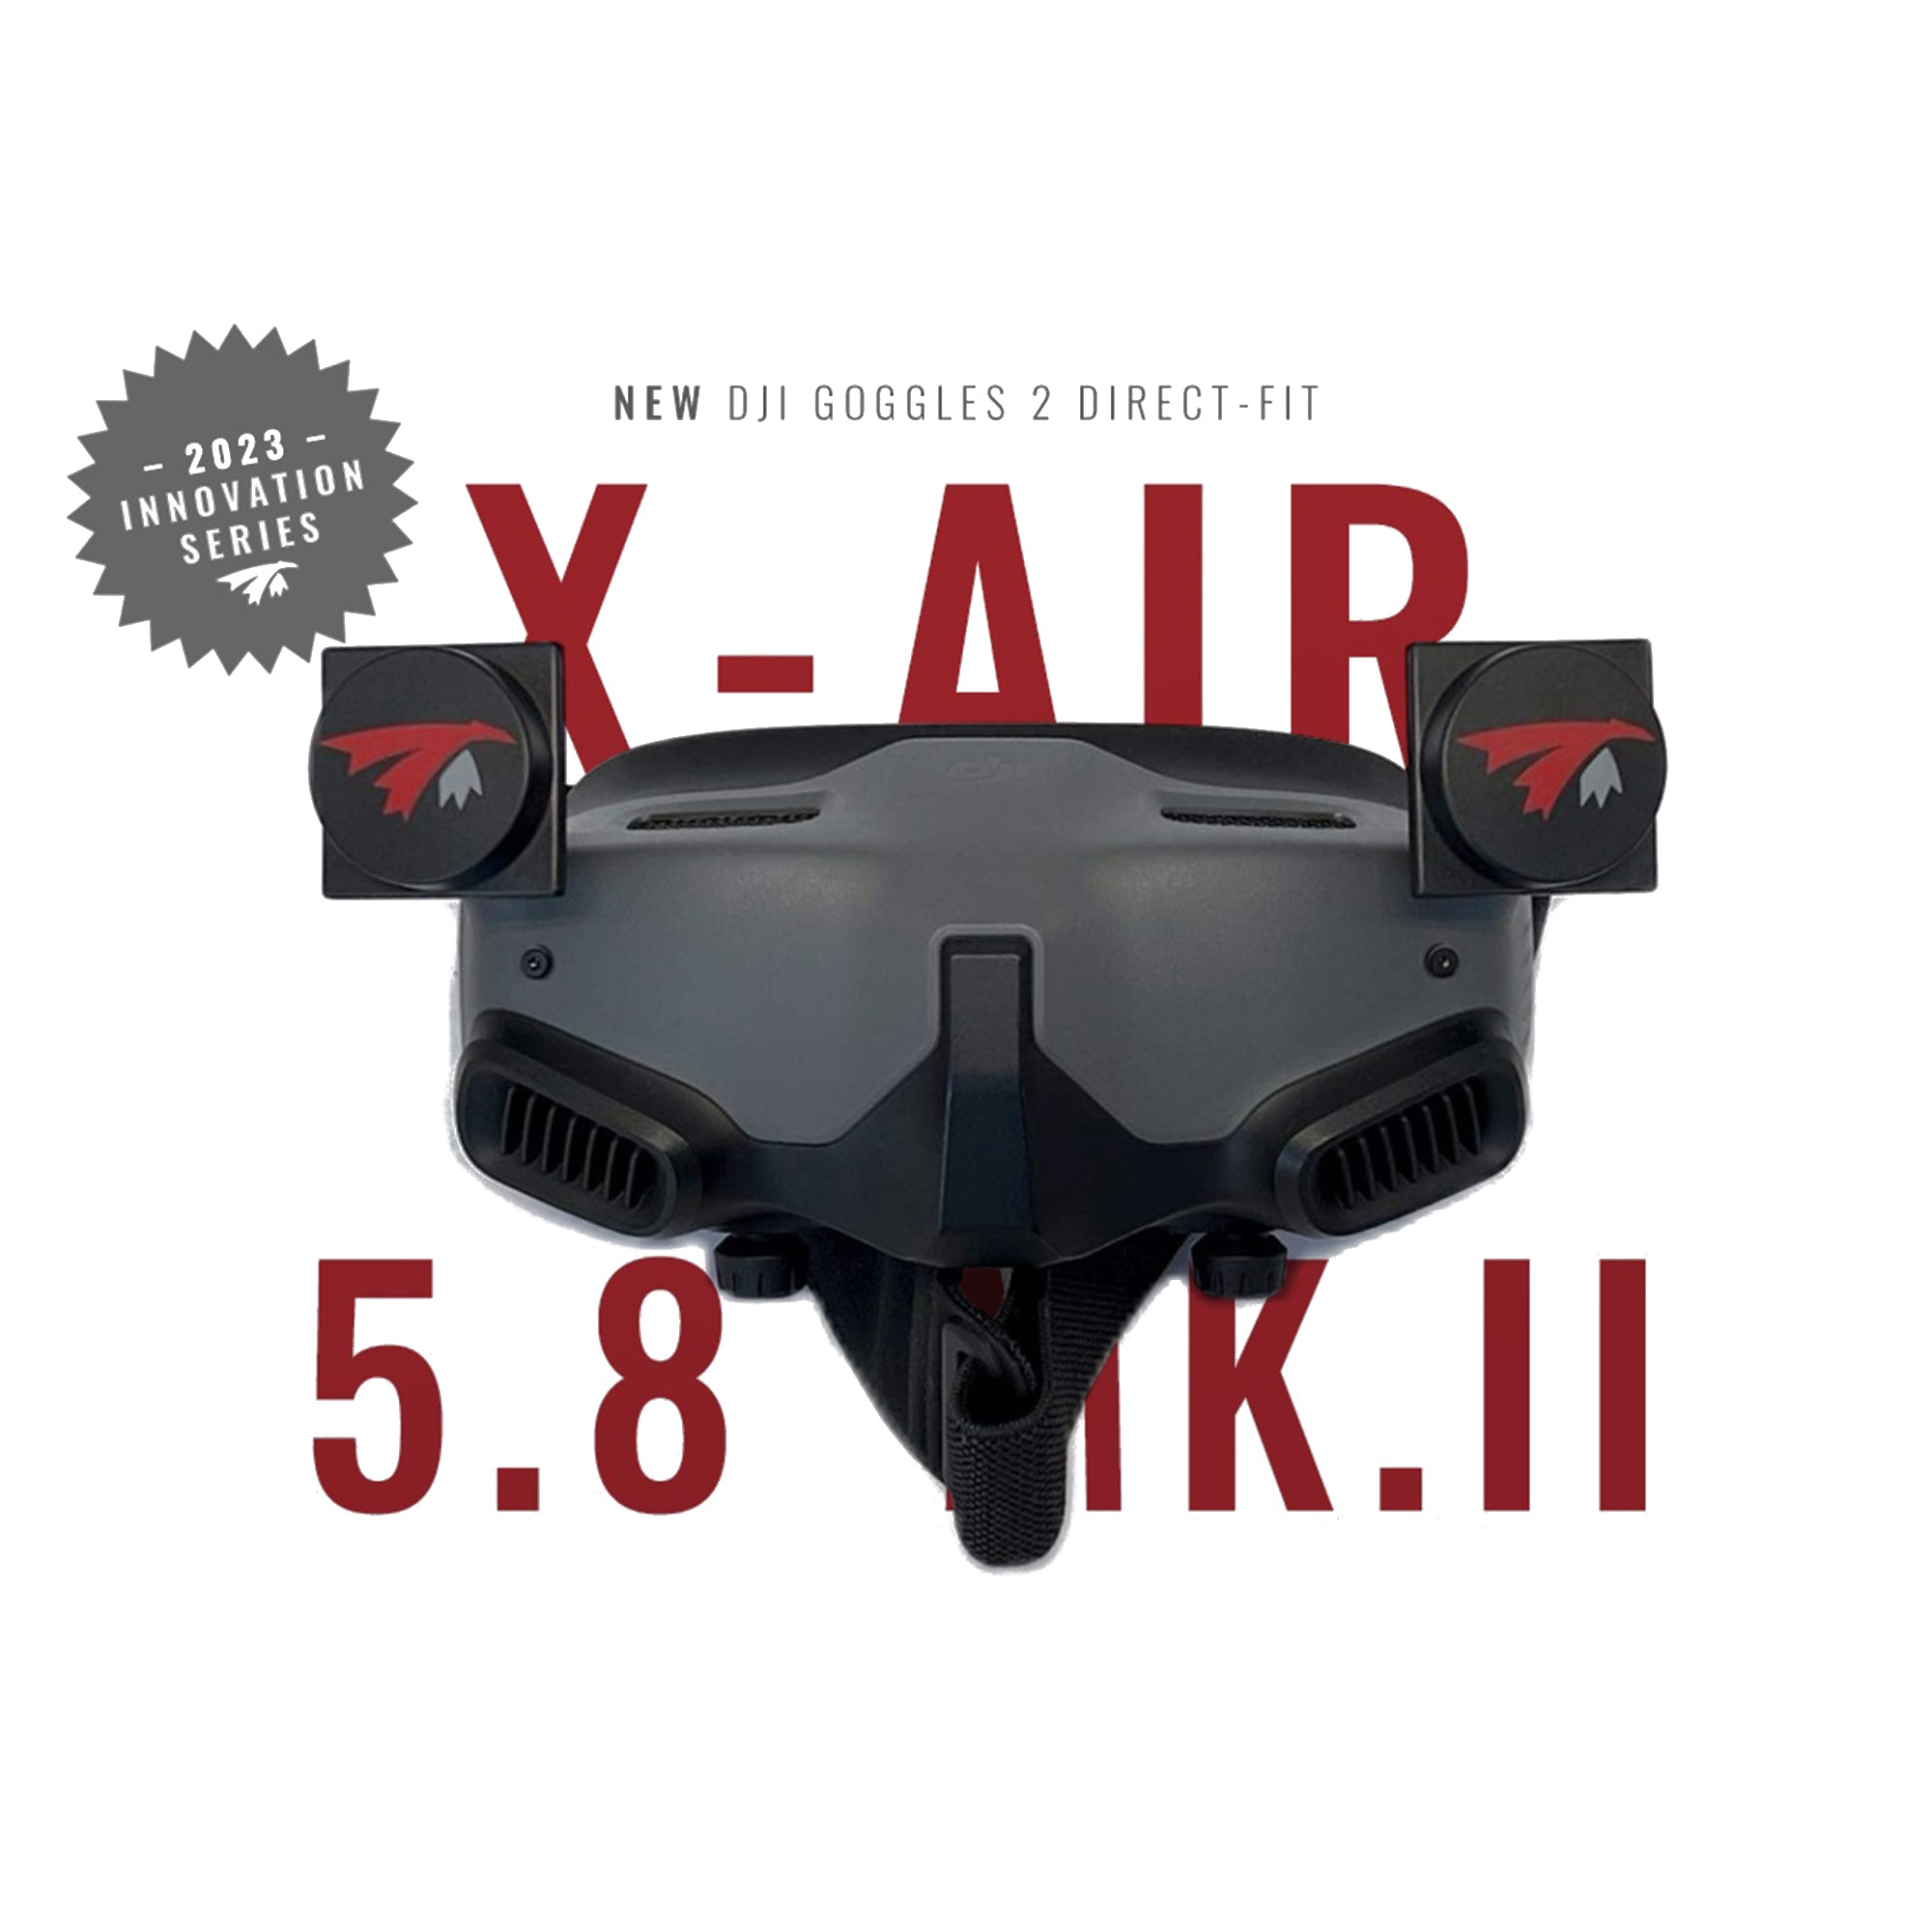 TrueRC X-Air 5.8ghz MK II Pair for DJI Goggles 2